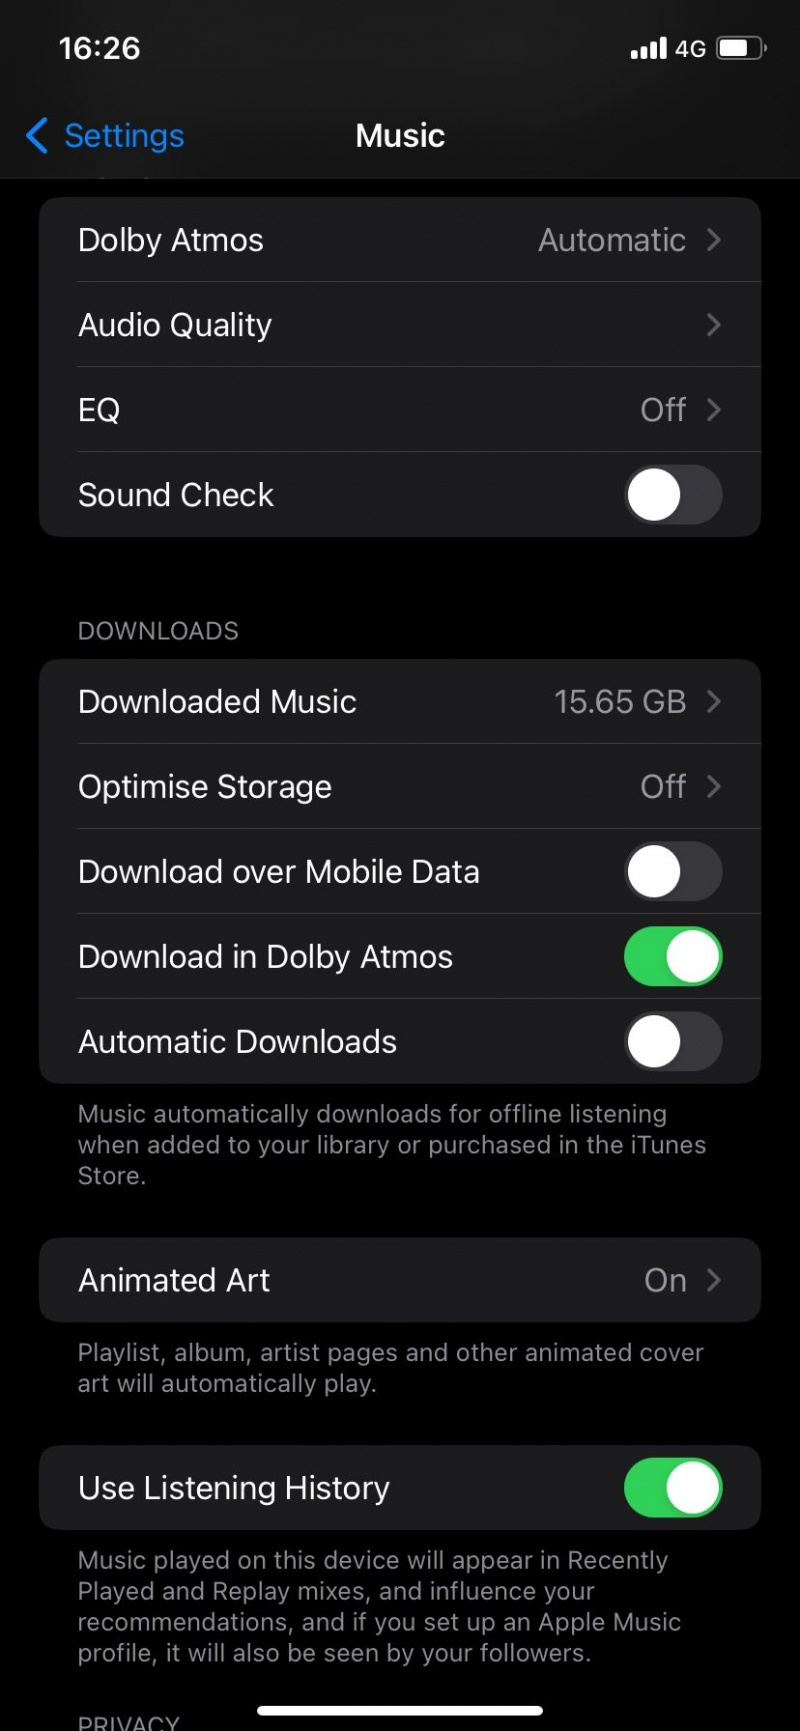   Download via mobildata er deaktiveret på Apple Music